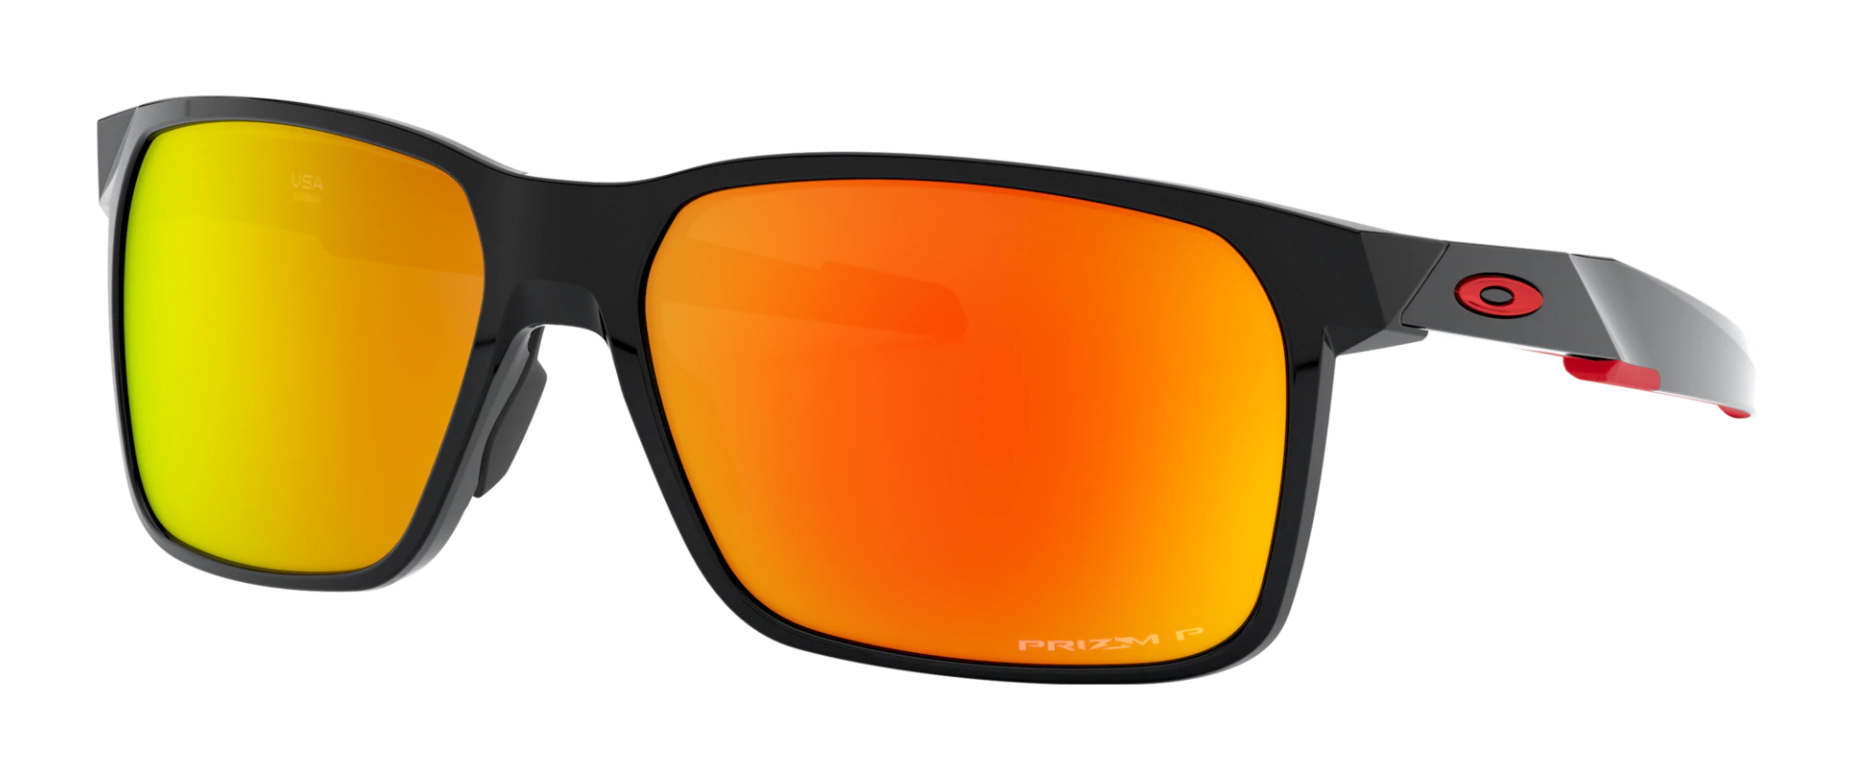 Best Oakley Men's Sunglasses of 2021 | SportRx